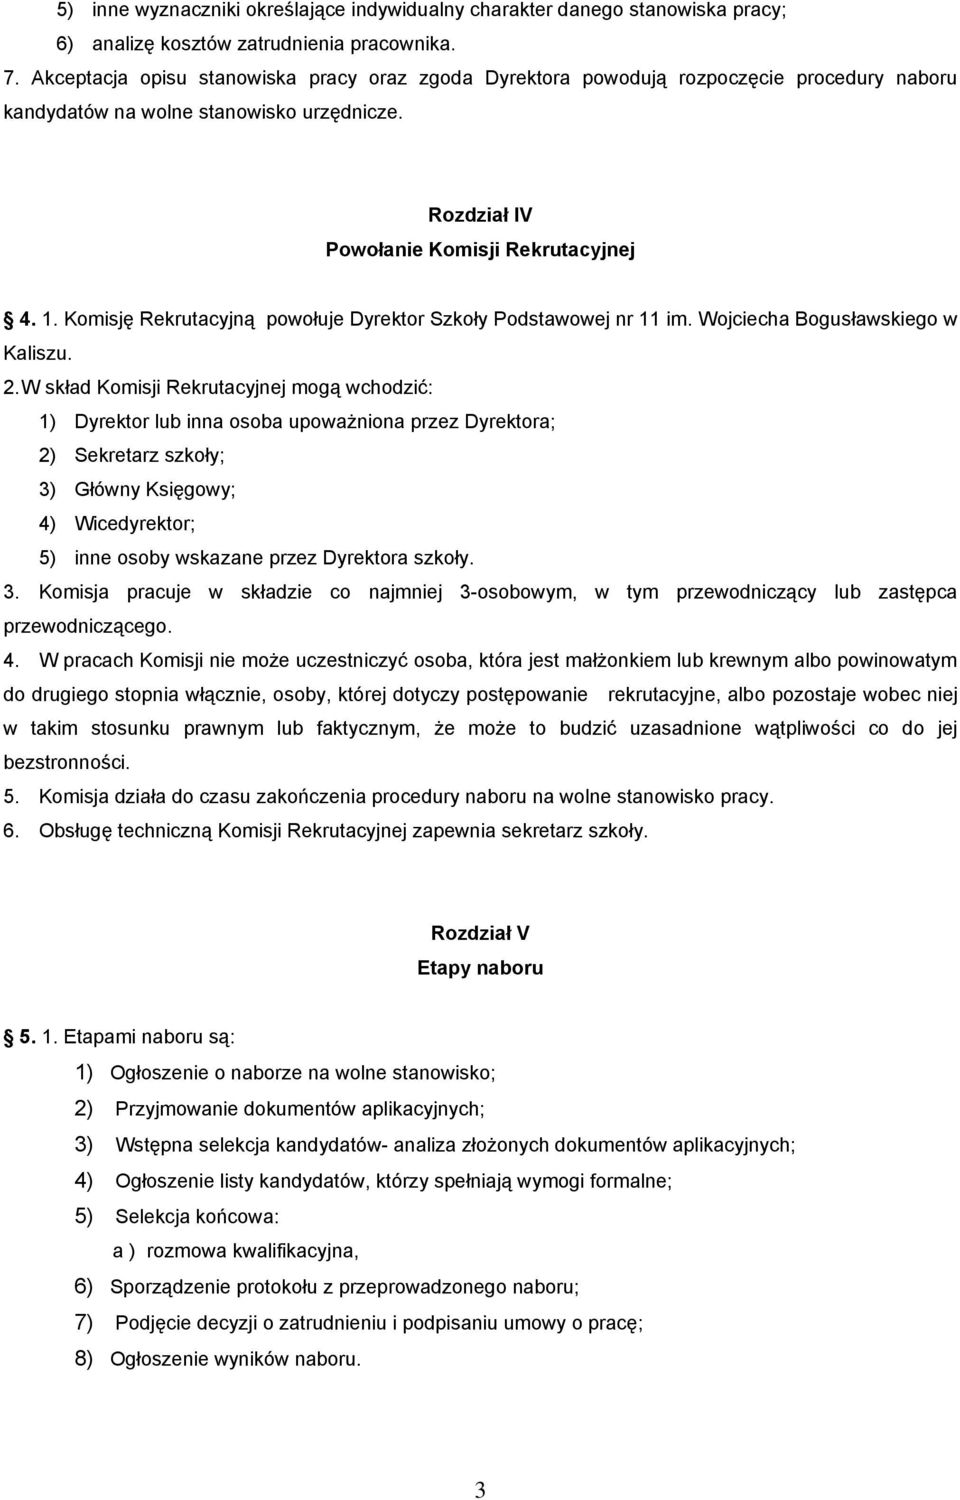 Komisję Rekrutacyjną powołuje Dyrektor Szkoły Podstawowej nr 11 im. Wojciecha Bogusławskiego w Kaliszu. 2.